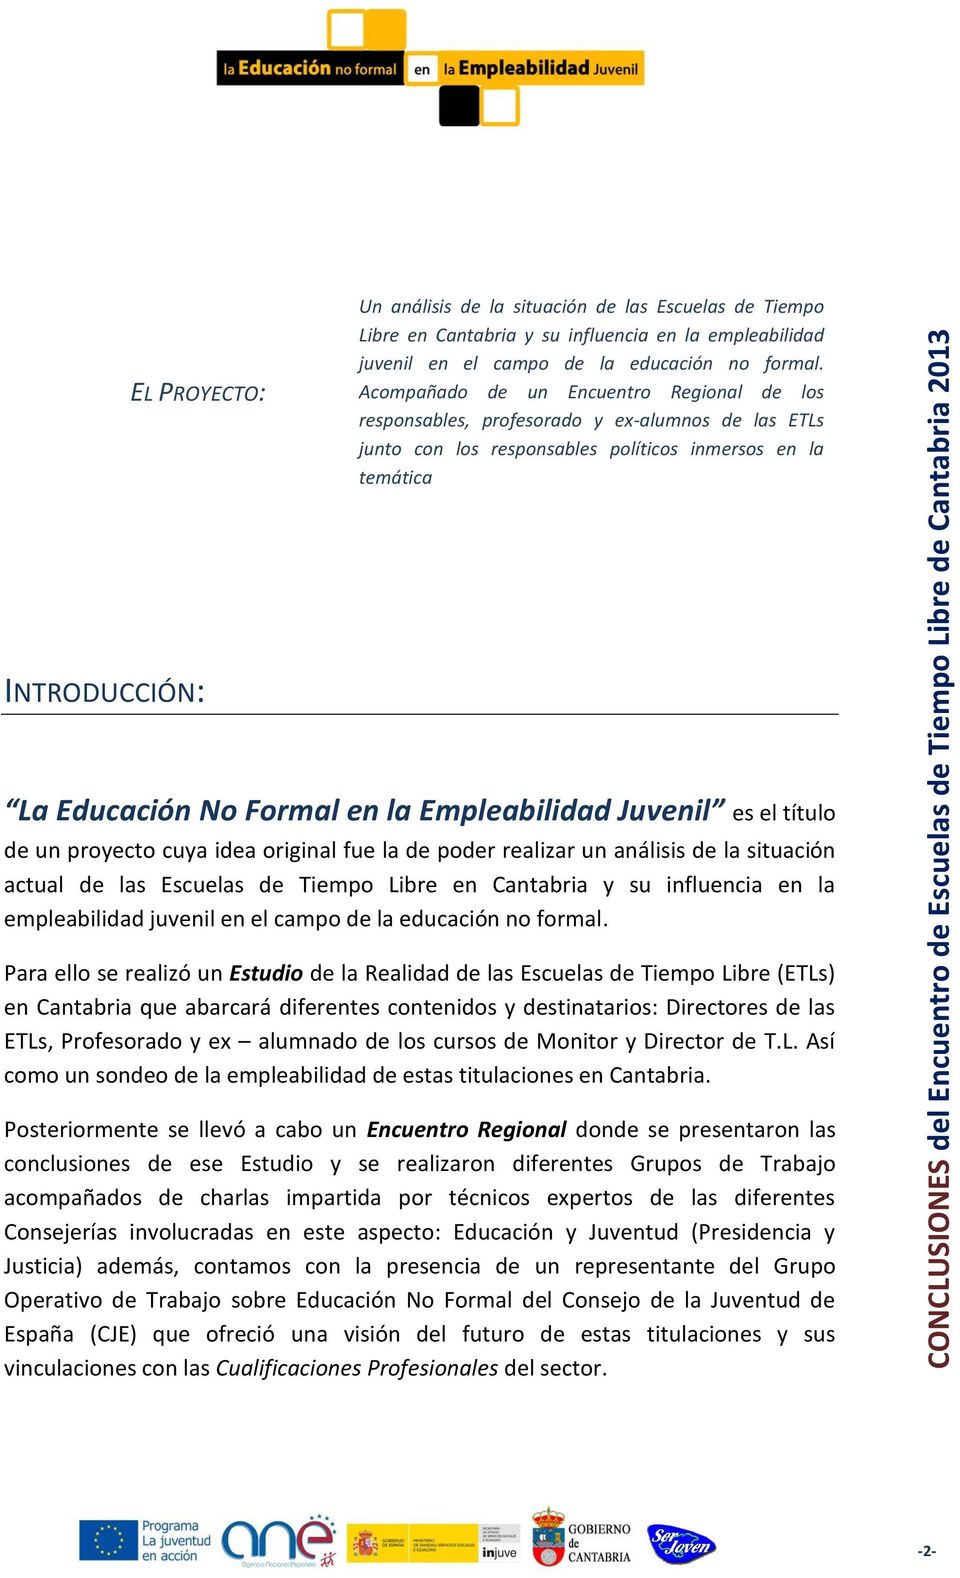 Empleabilidad Juvenil es el título de un proyecto cuya idea original fue la de poder realizar un análisis de la situación actual de las Escuelas de Tiempo Libre en Cantabria y su influencia en la